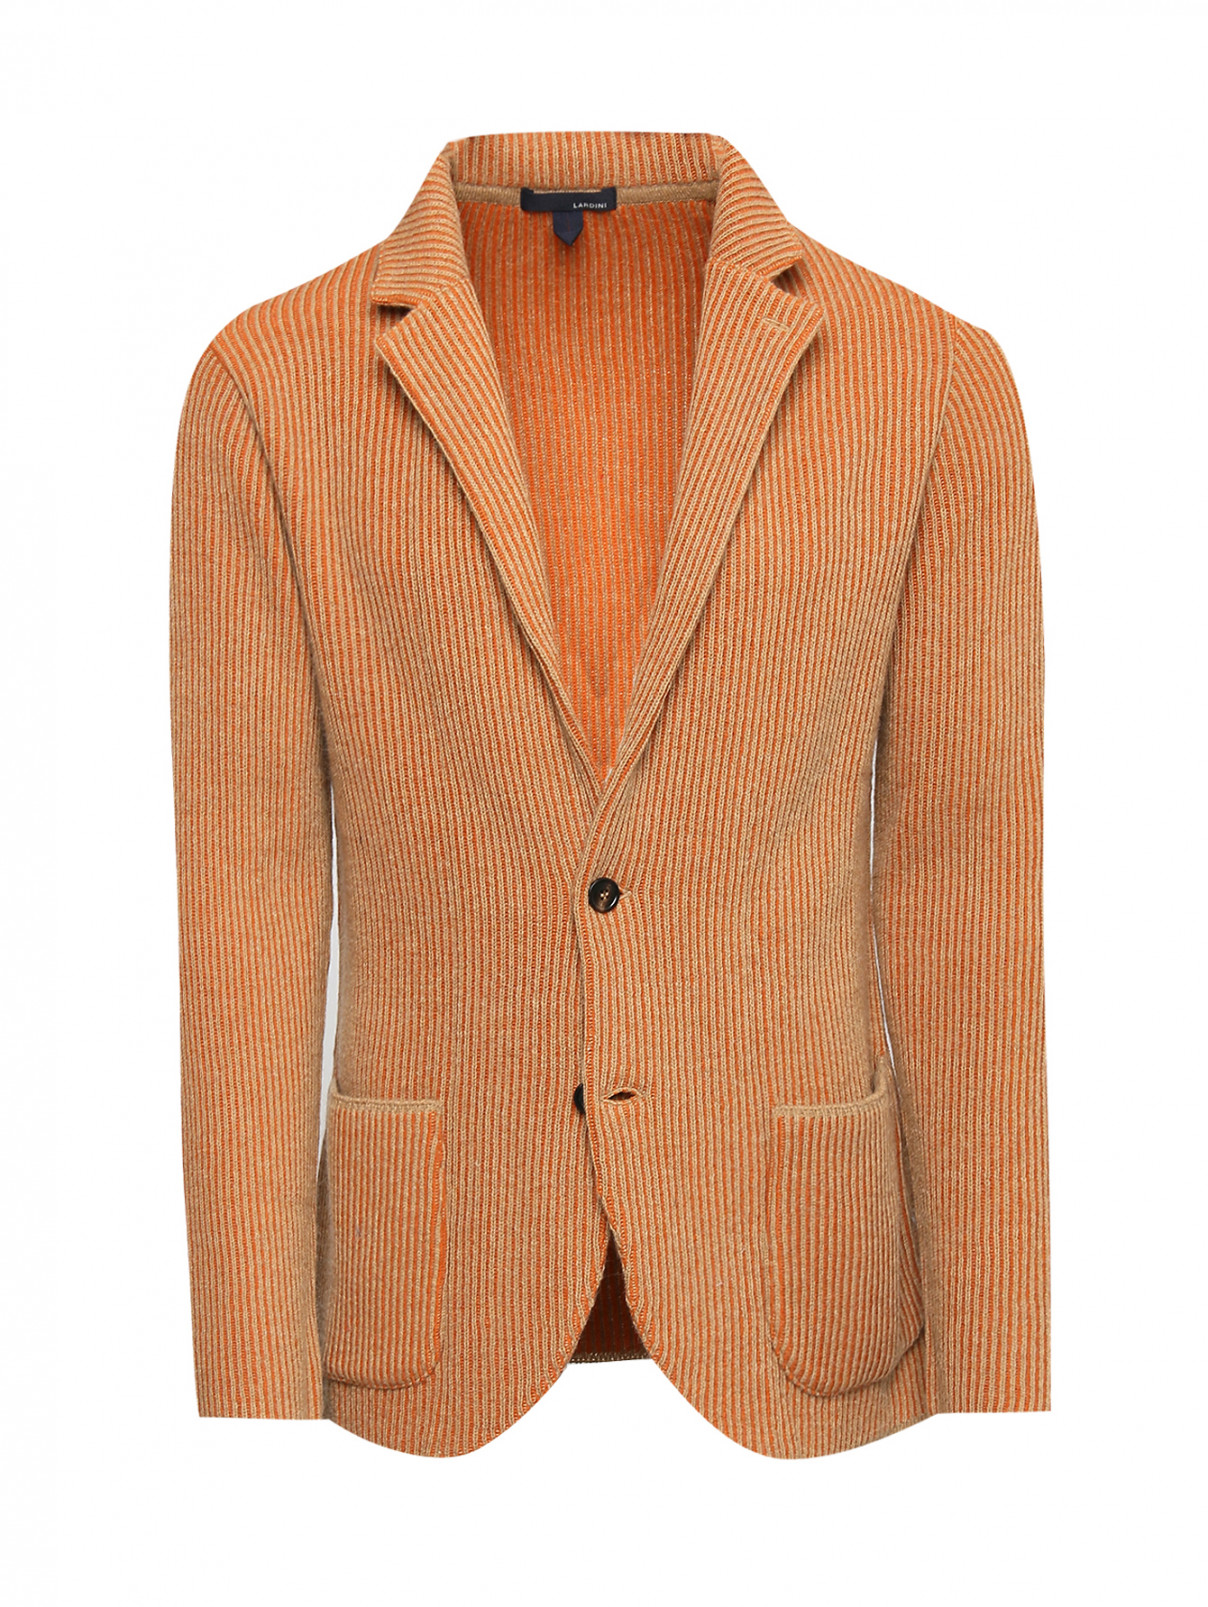 Кардиган из шерсти с накладными карманами LARDINI  –  Общий вид  – Цвет:  Оранжевый